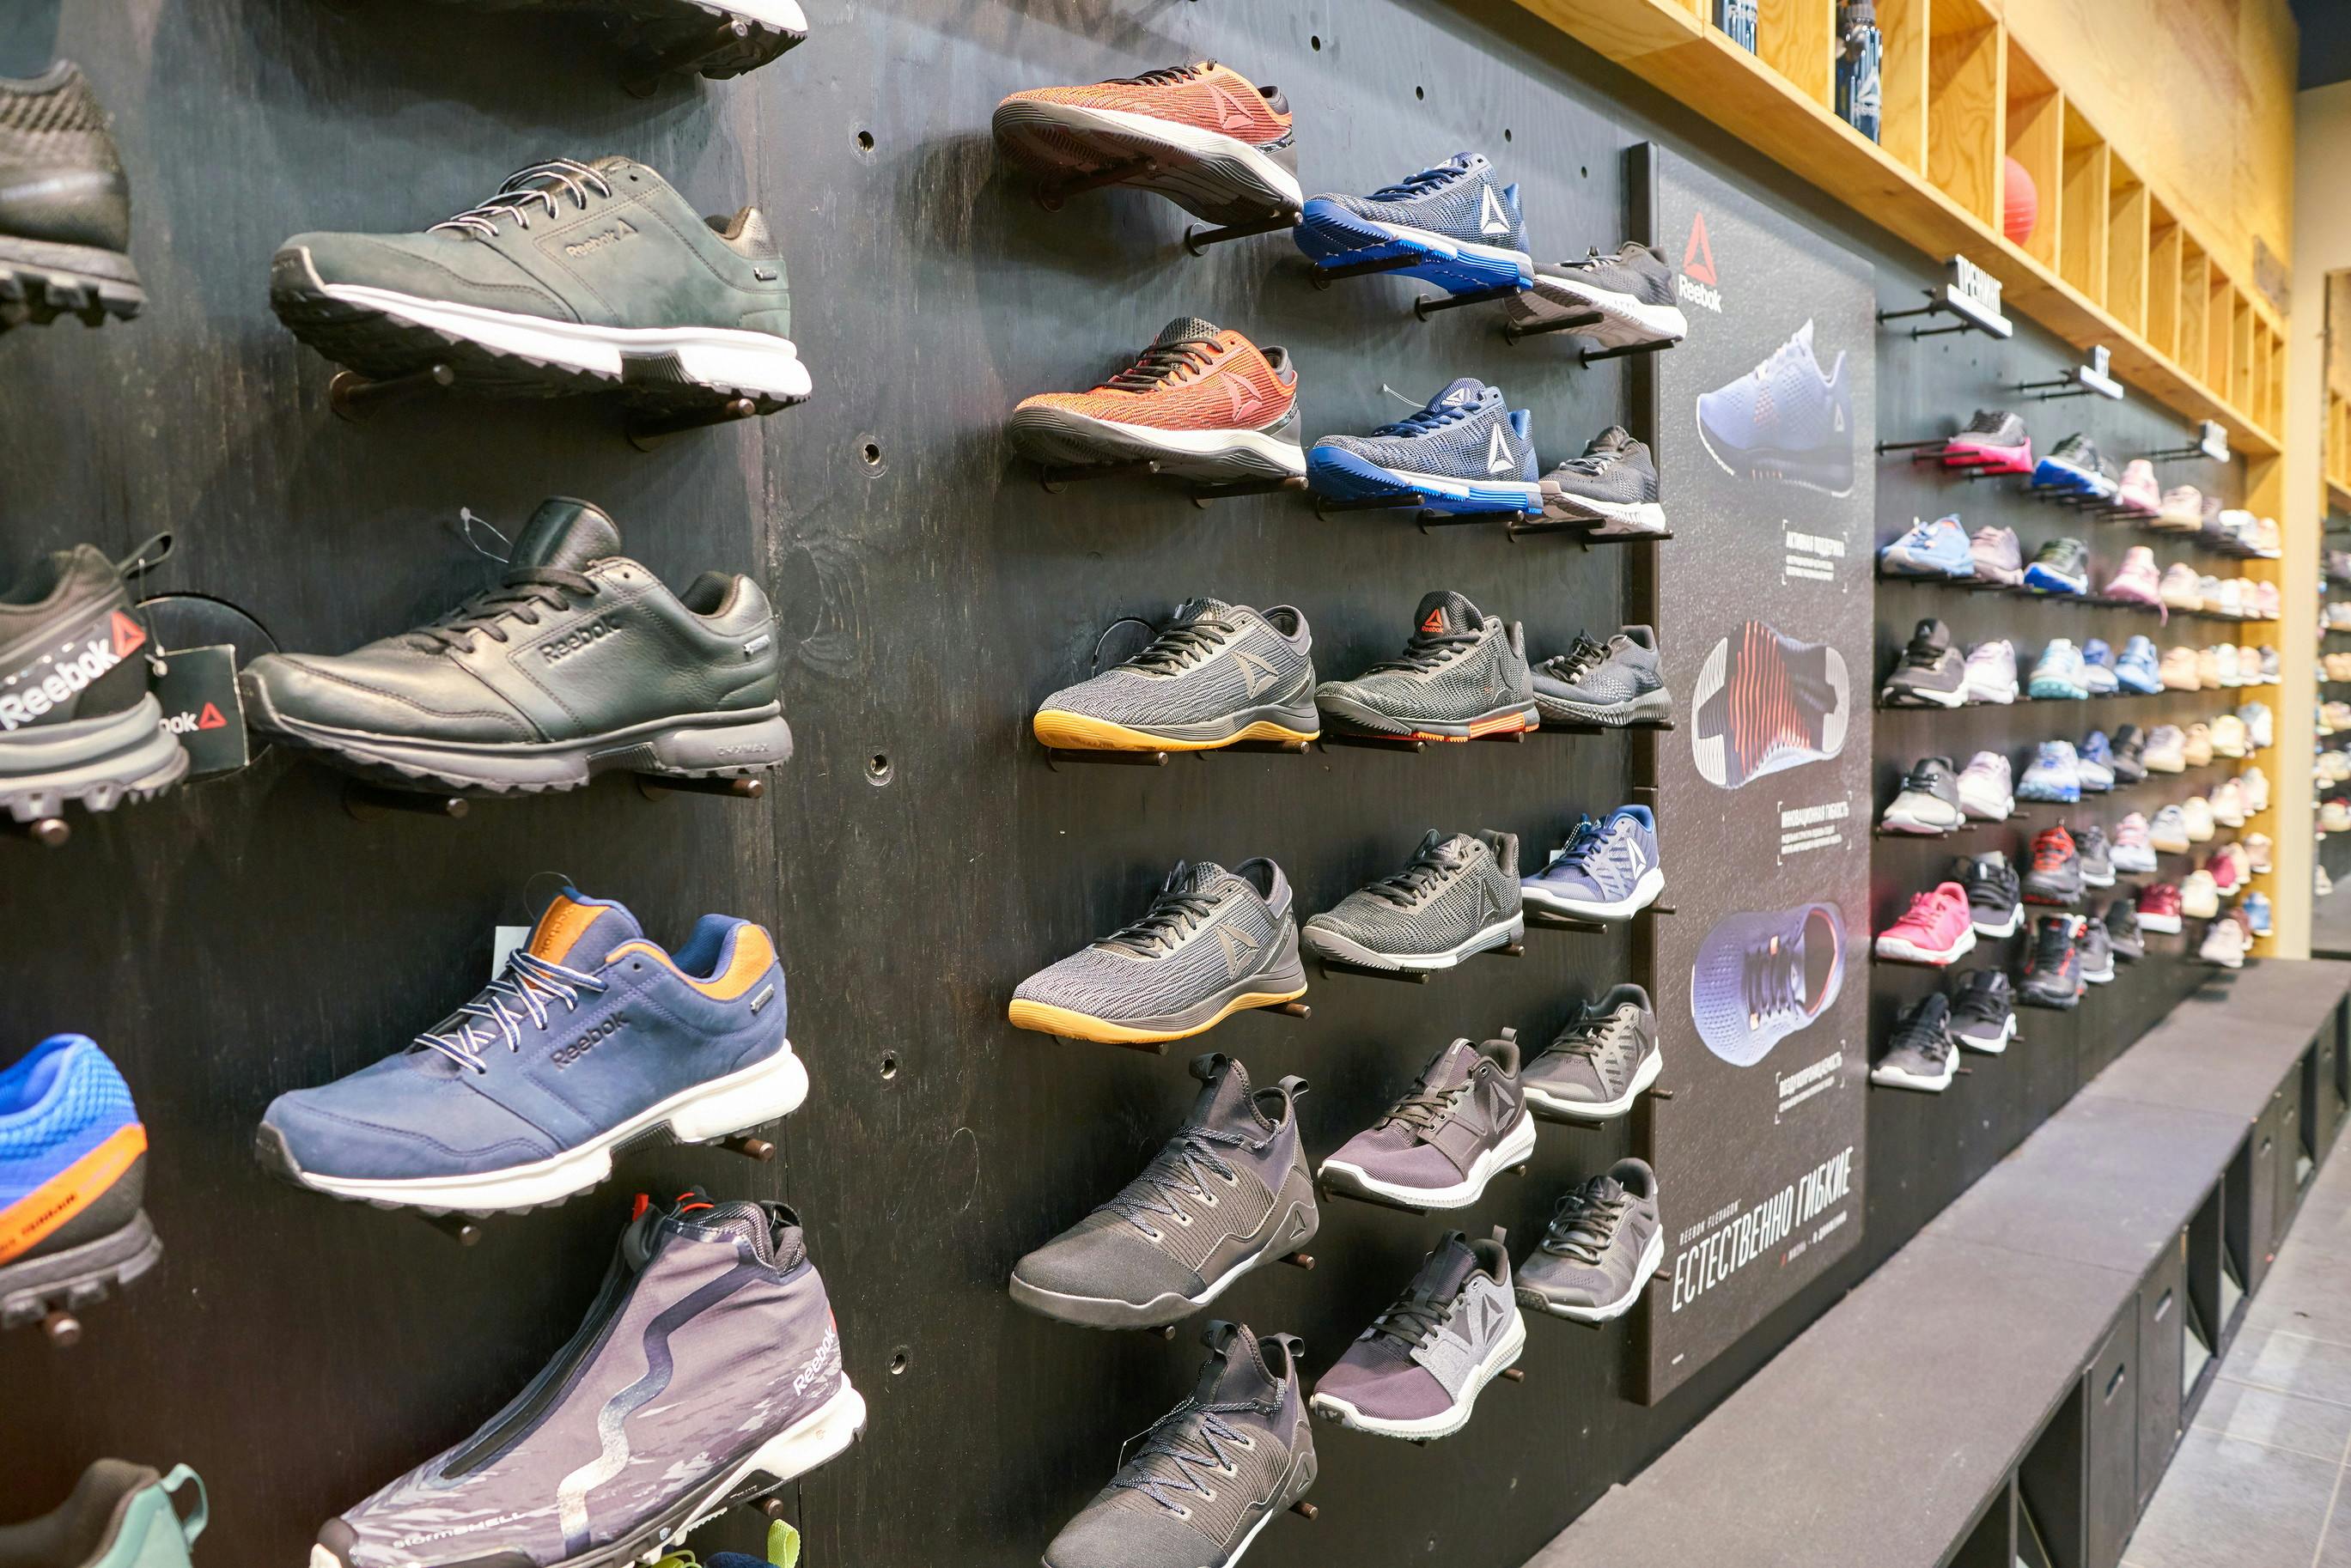 the runaround shoe store